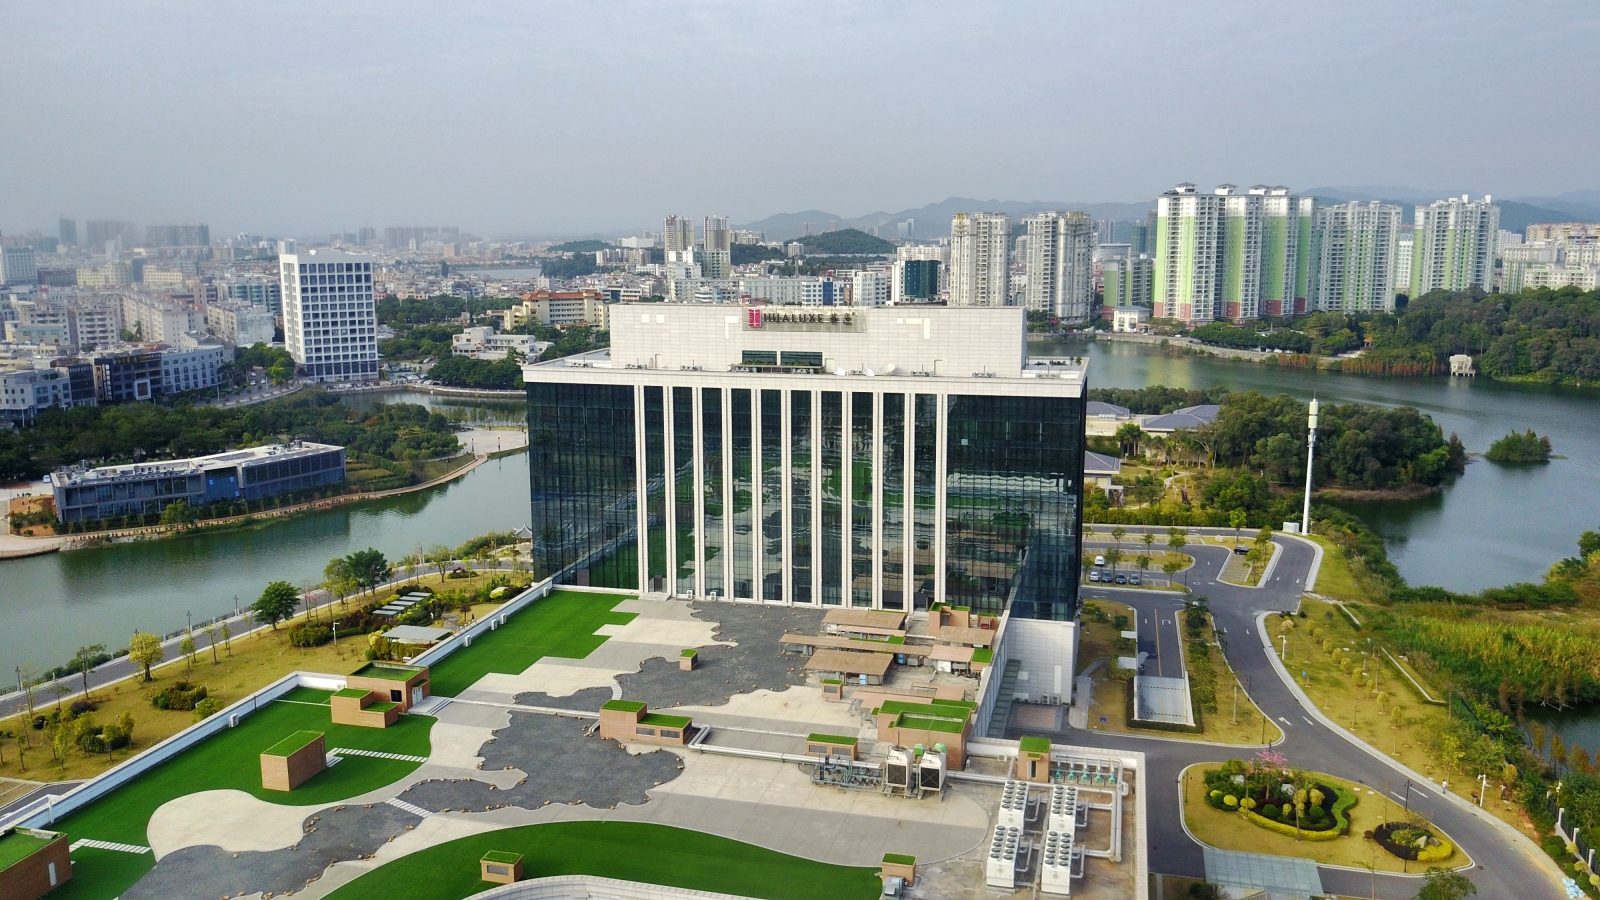 陽江中心華邑酒店是洲際酒店集團為華人所打造的第一個豪華五星級酒店品牌，2015年開業，座落於市區絕佳位置，是陽江最受歡迎的酒店之一。